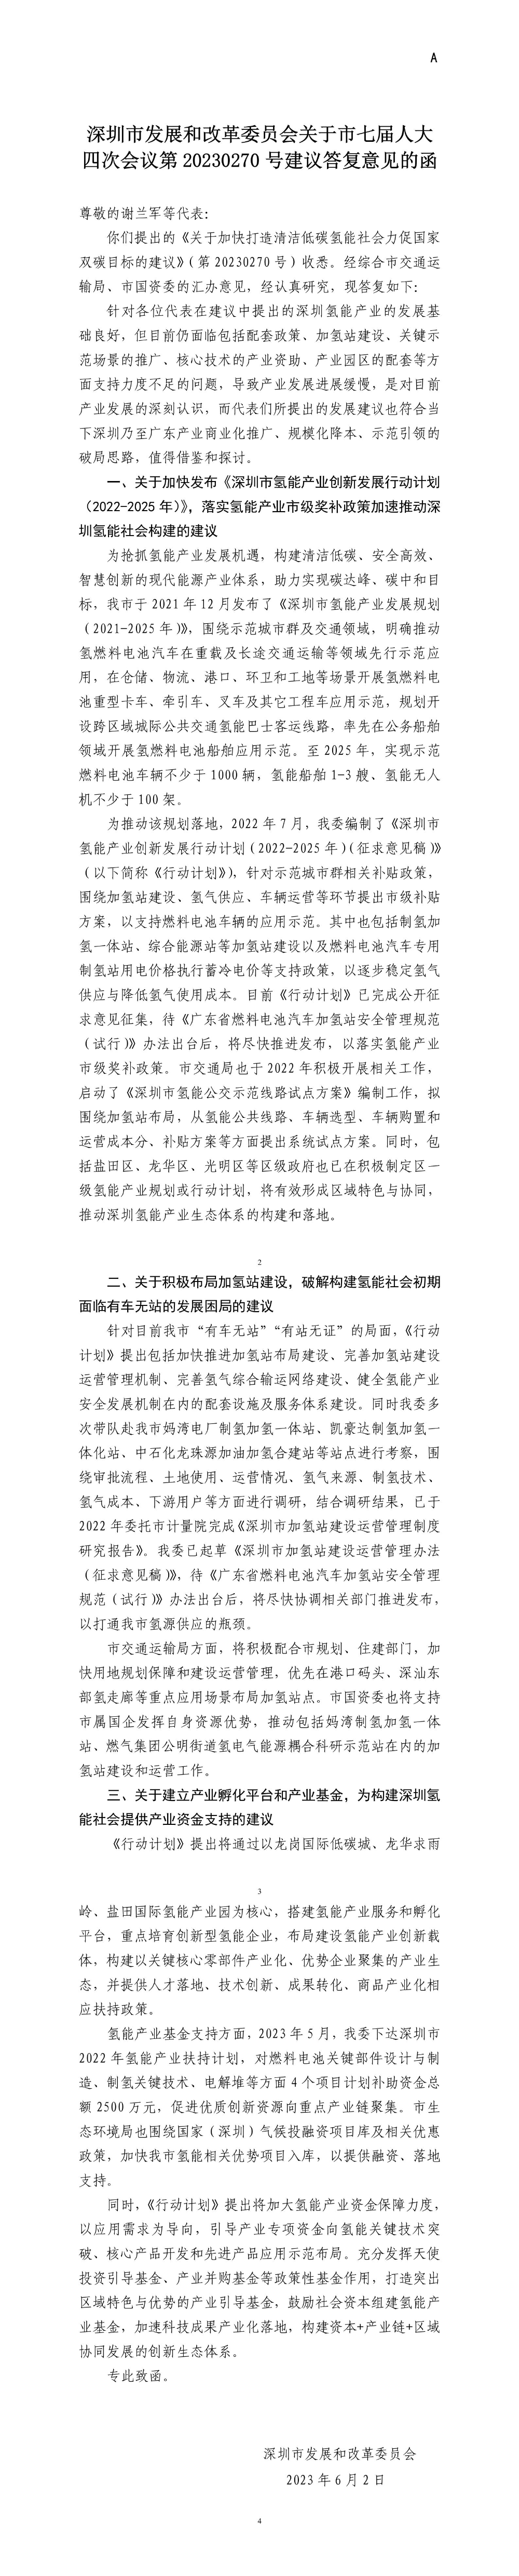 深圳市发展和改革委员会关于市七届人大四次会议第20230270号建议答复意见的函.jpg